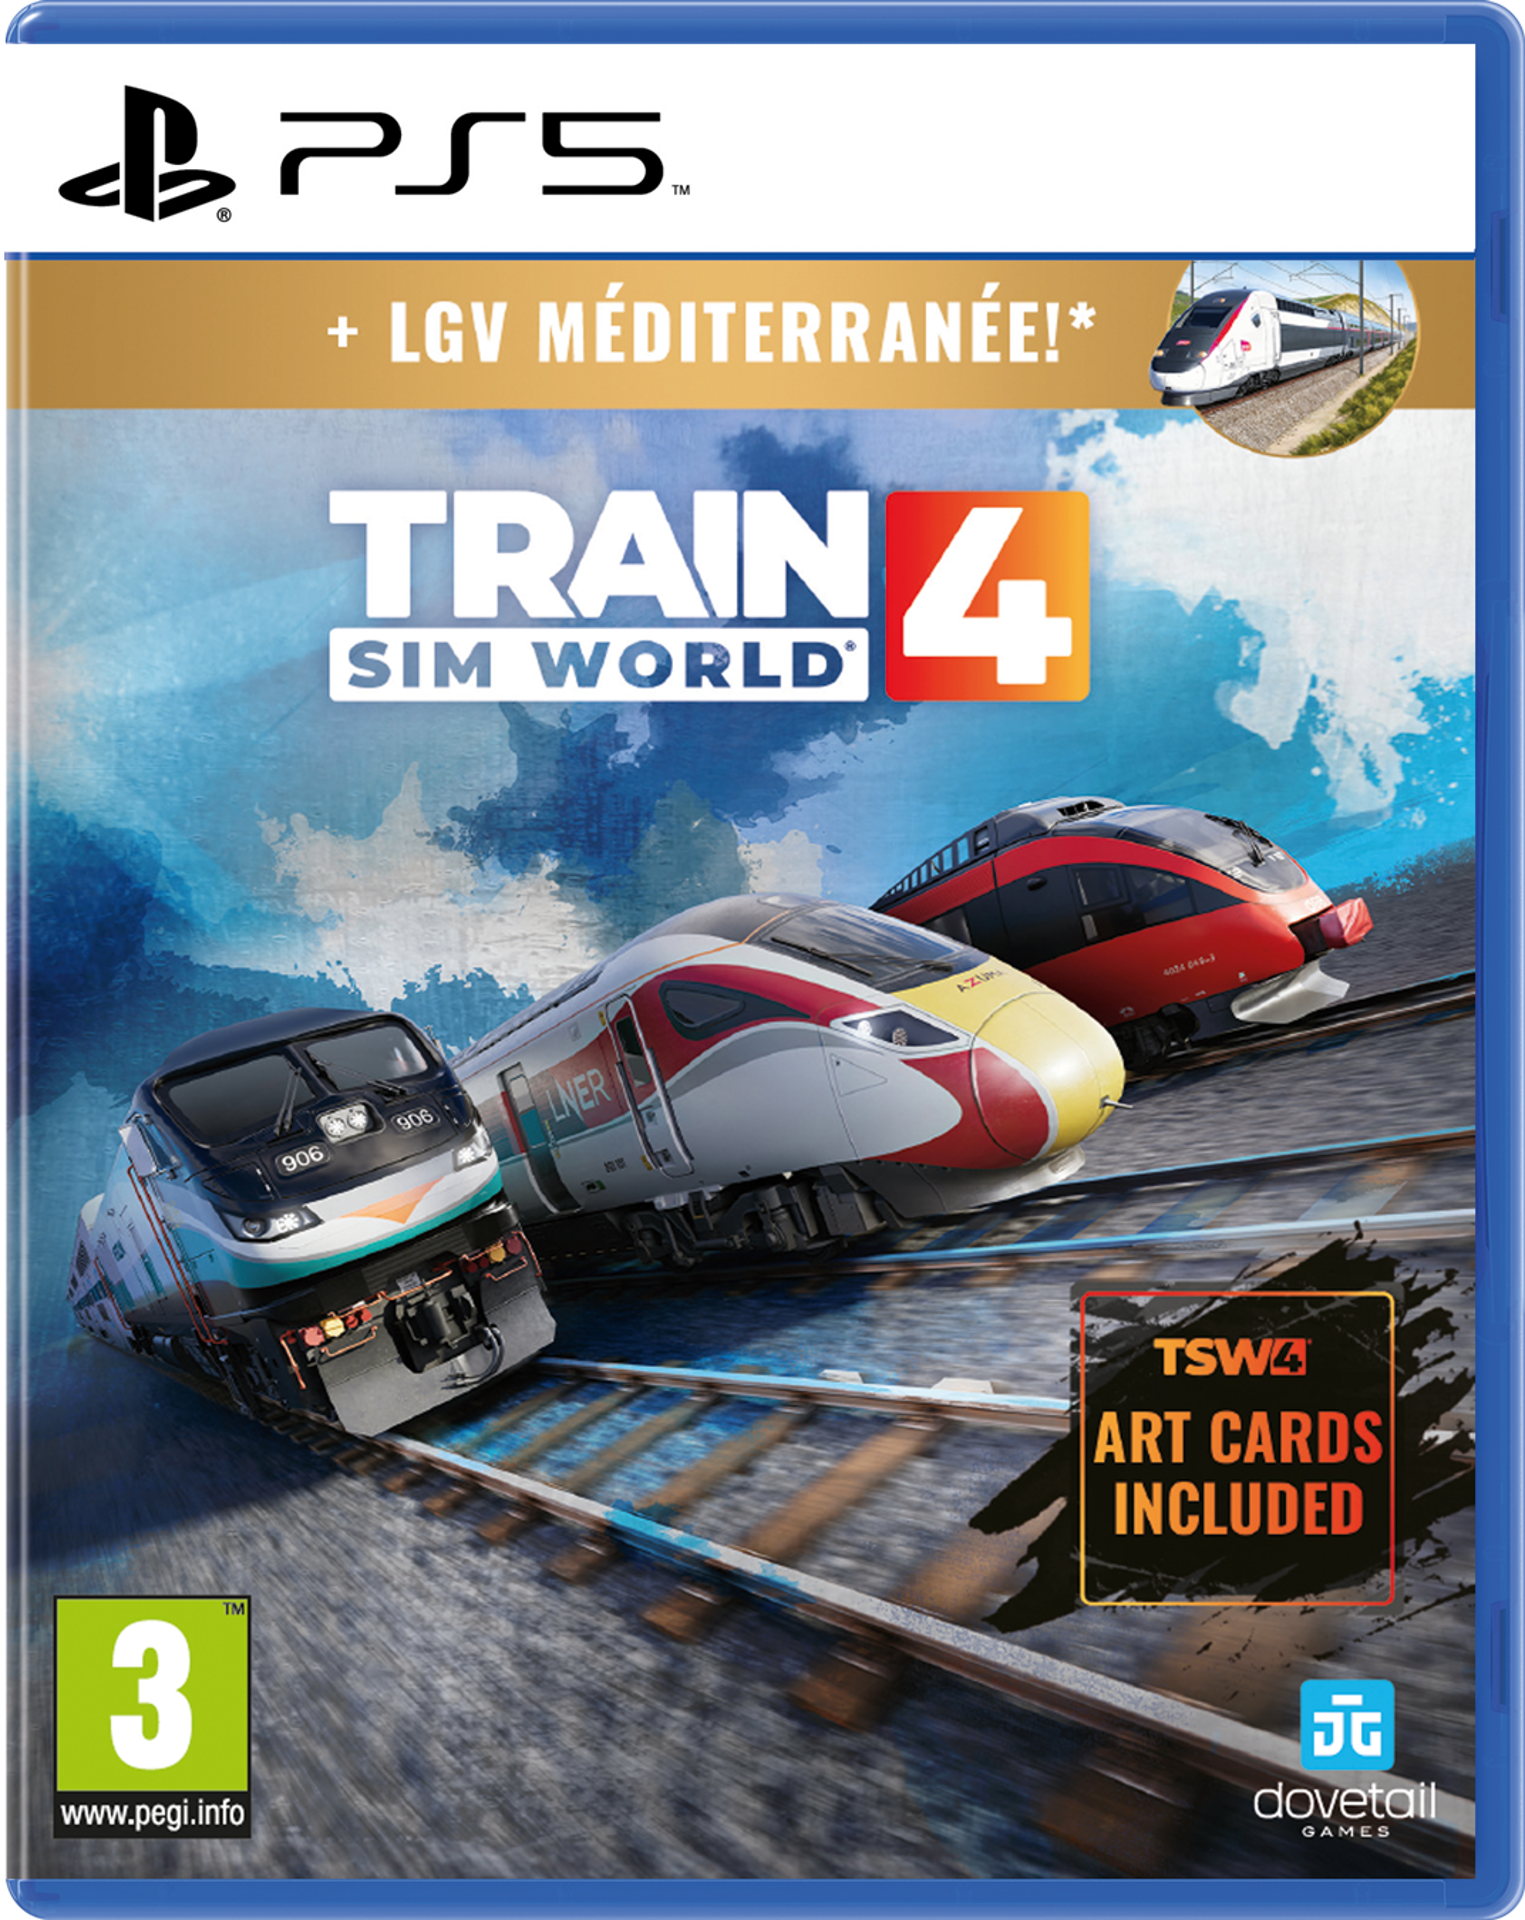 Train Sim World 4 : Console Edition - Deluxe